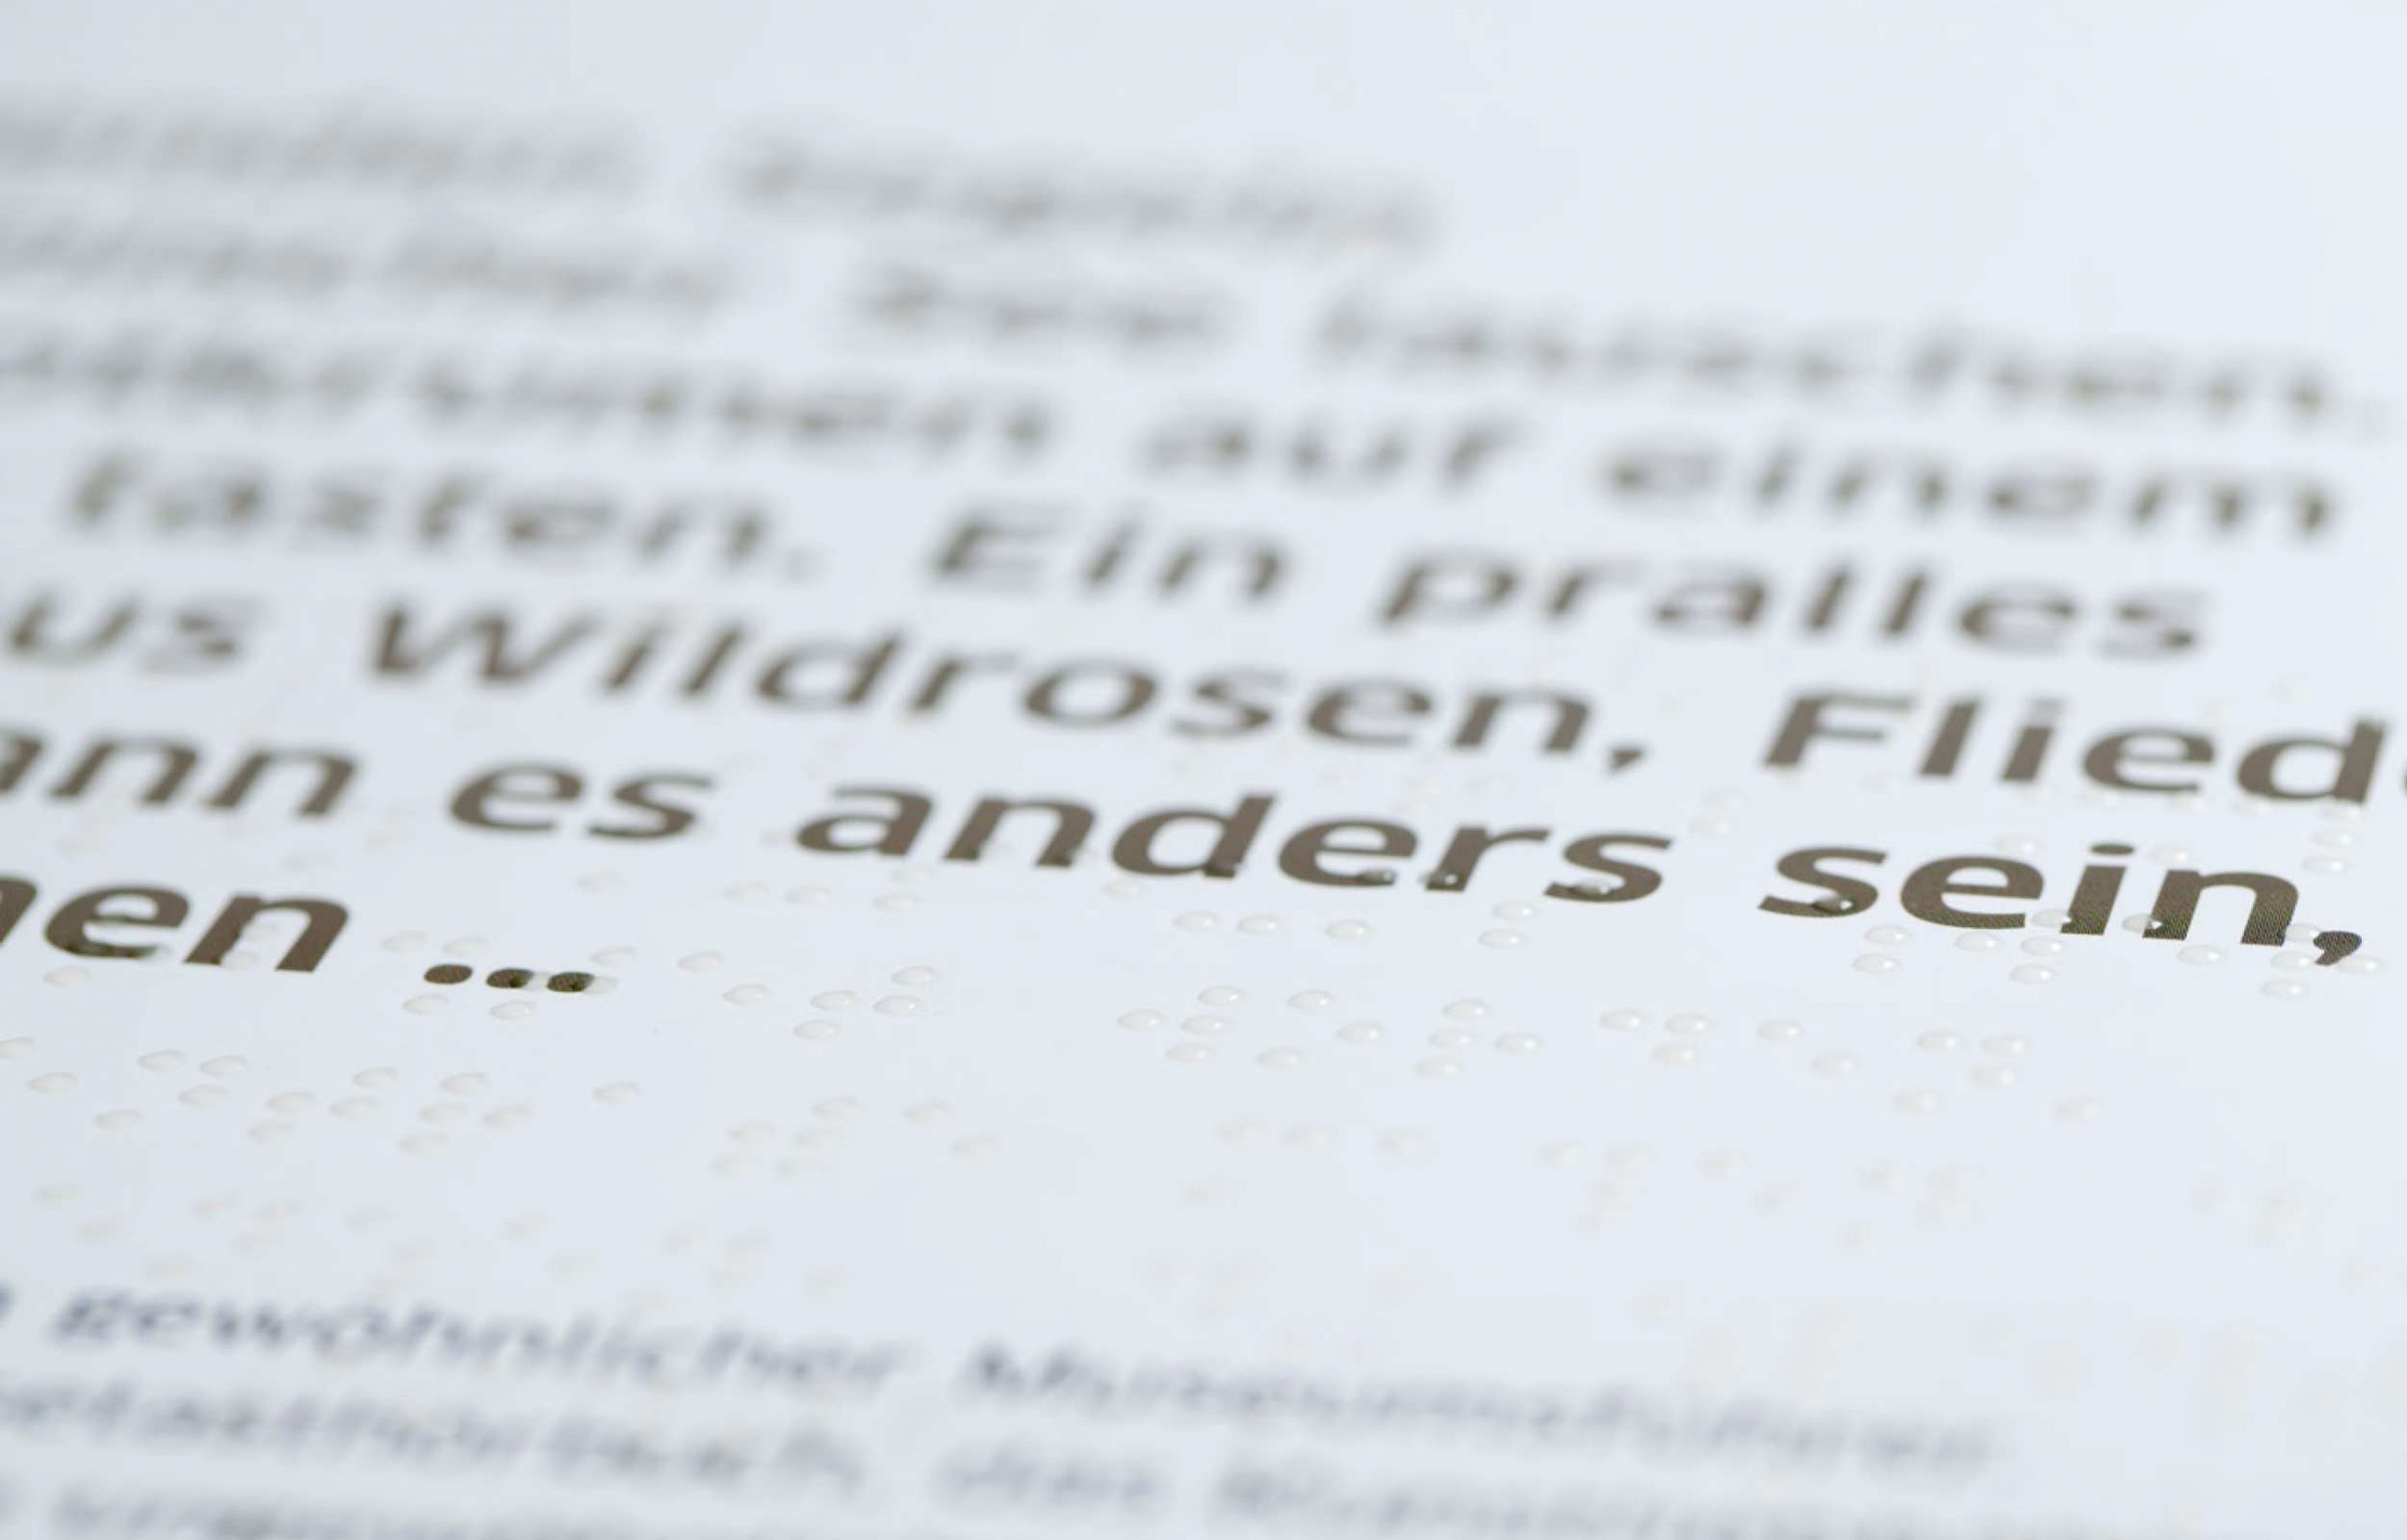 Detailfoto eines Braille-Druckes mit transparentem Lack auf Schwarzdruck. Das Braille-Schriftbild ist sauber ausgearbeitet und gut lesbar.